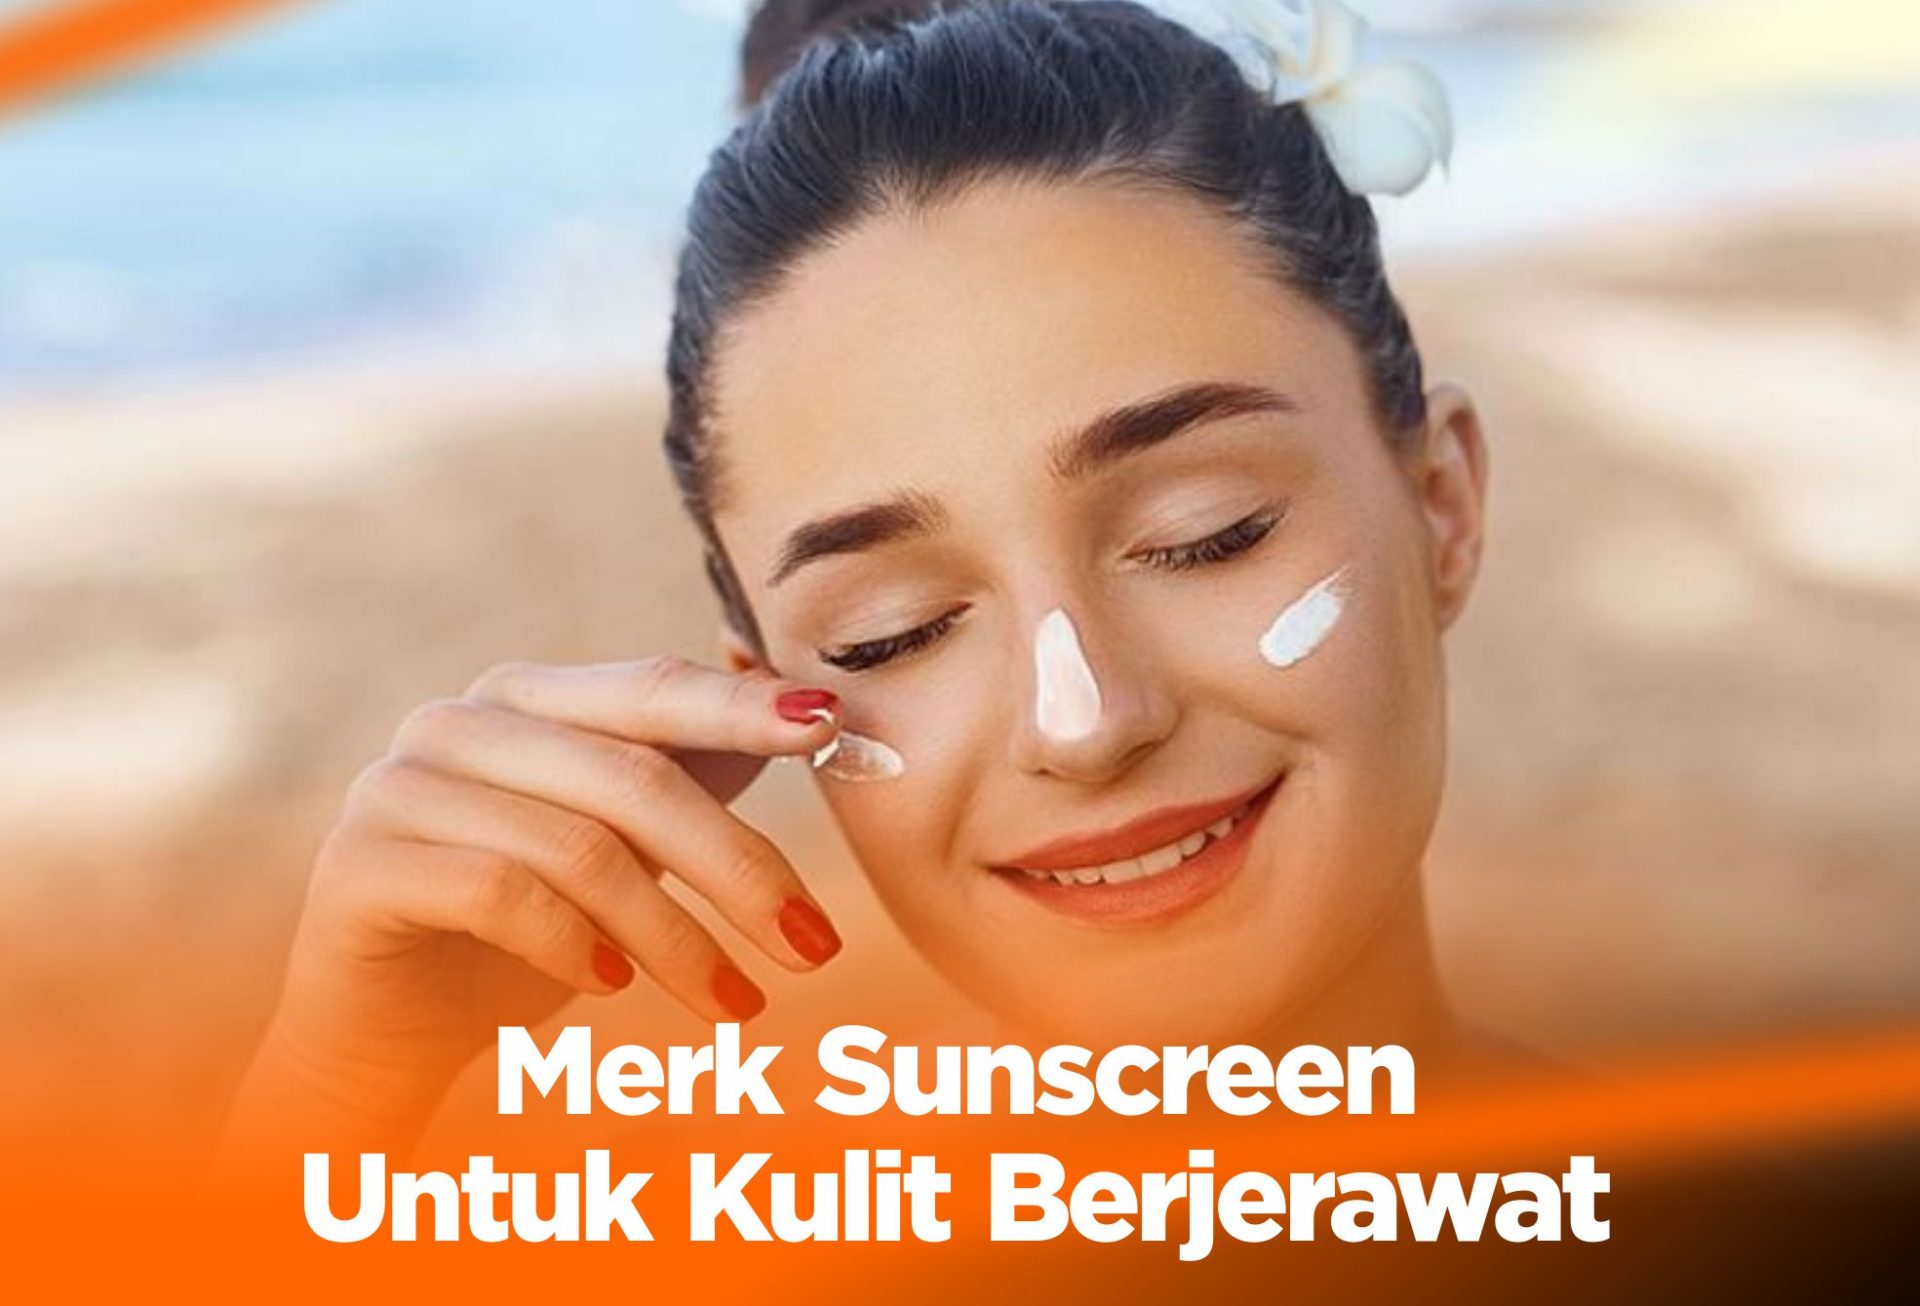 Merk Sunscreen Untuk Kulit Berjerawat